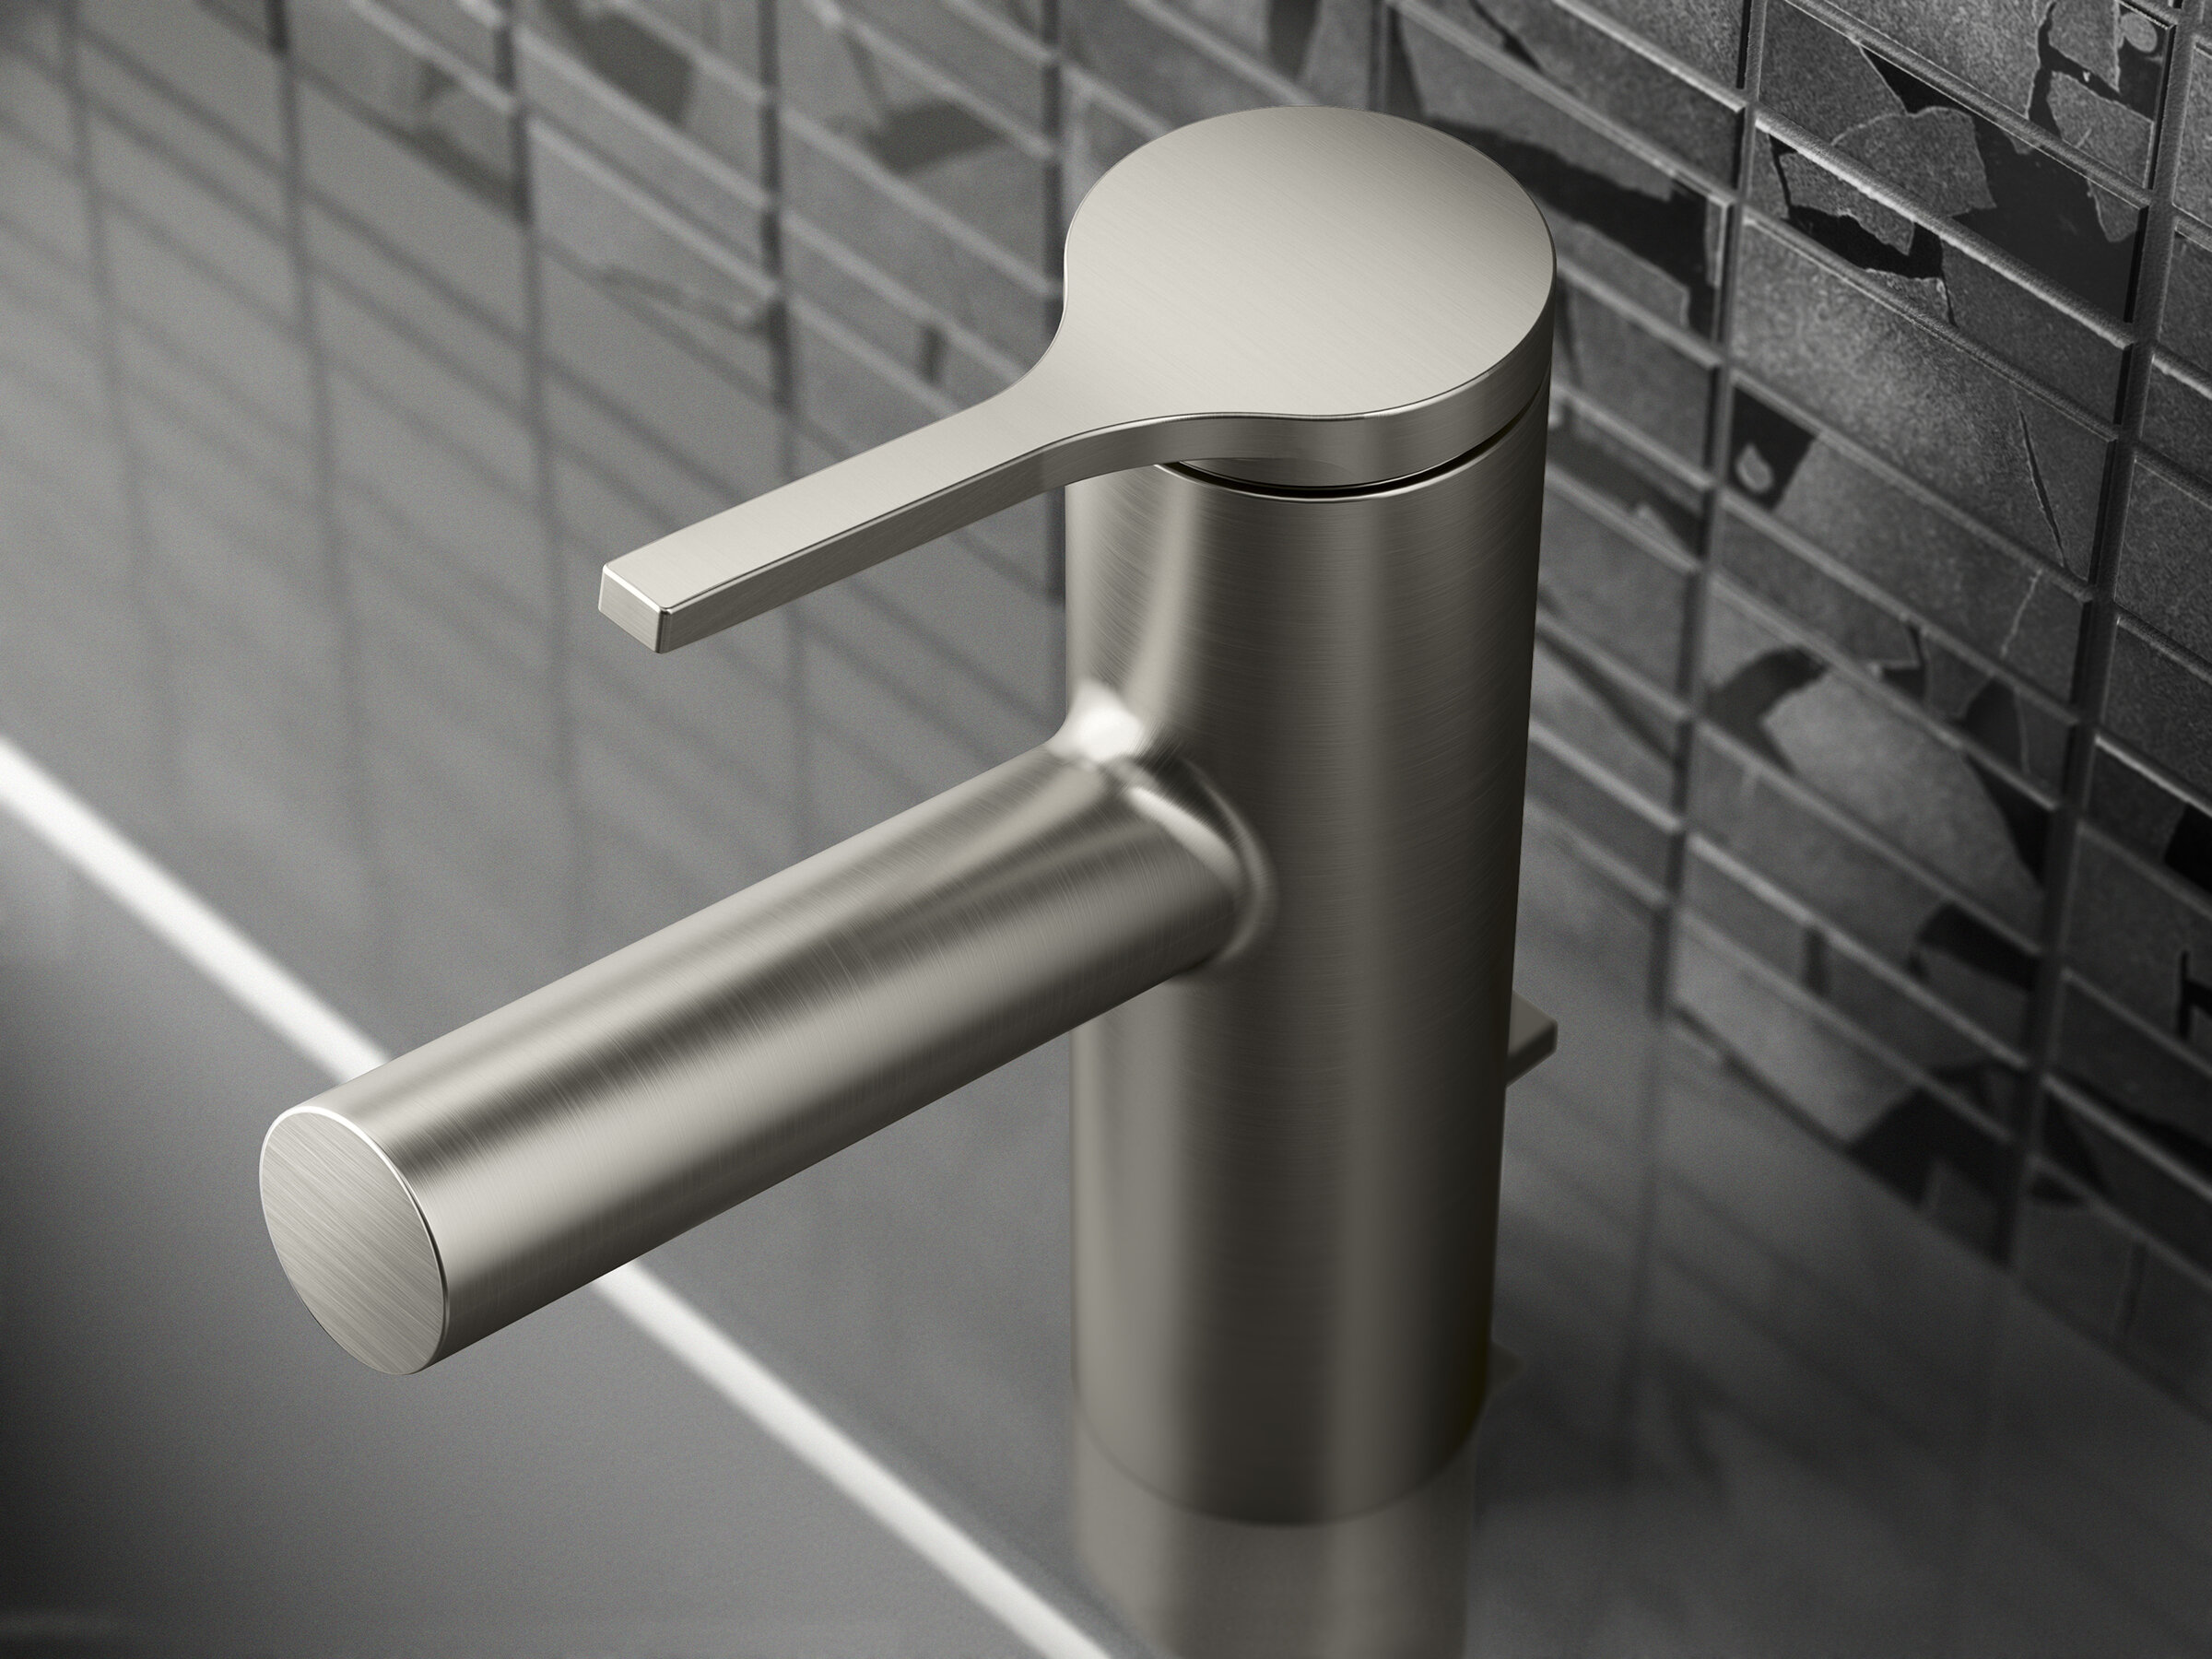 Kohler Elate Single Handle Bathroom Sink Faucet Reviews Wayfair